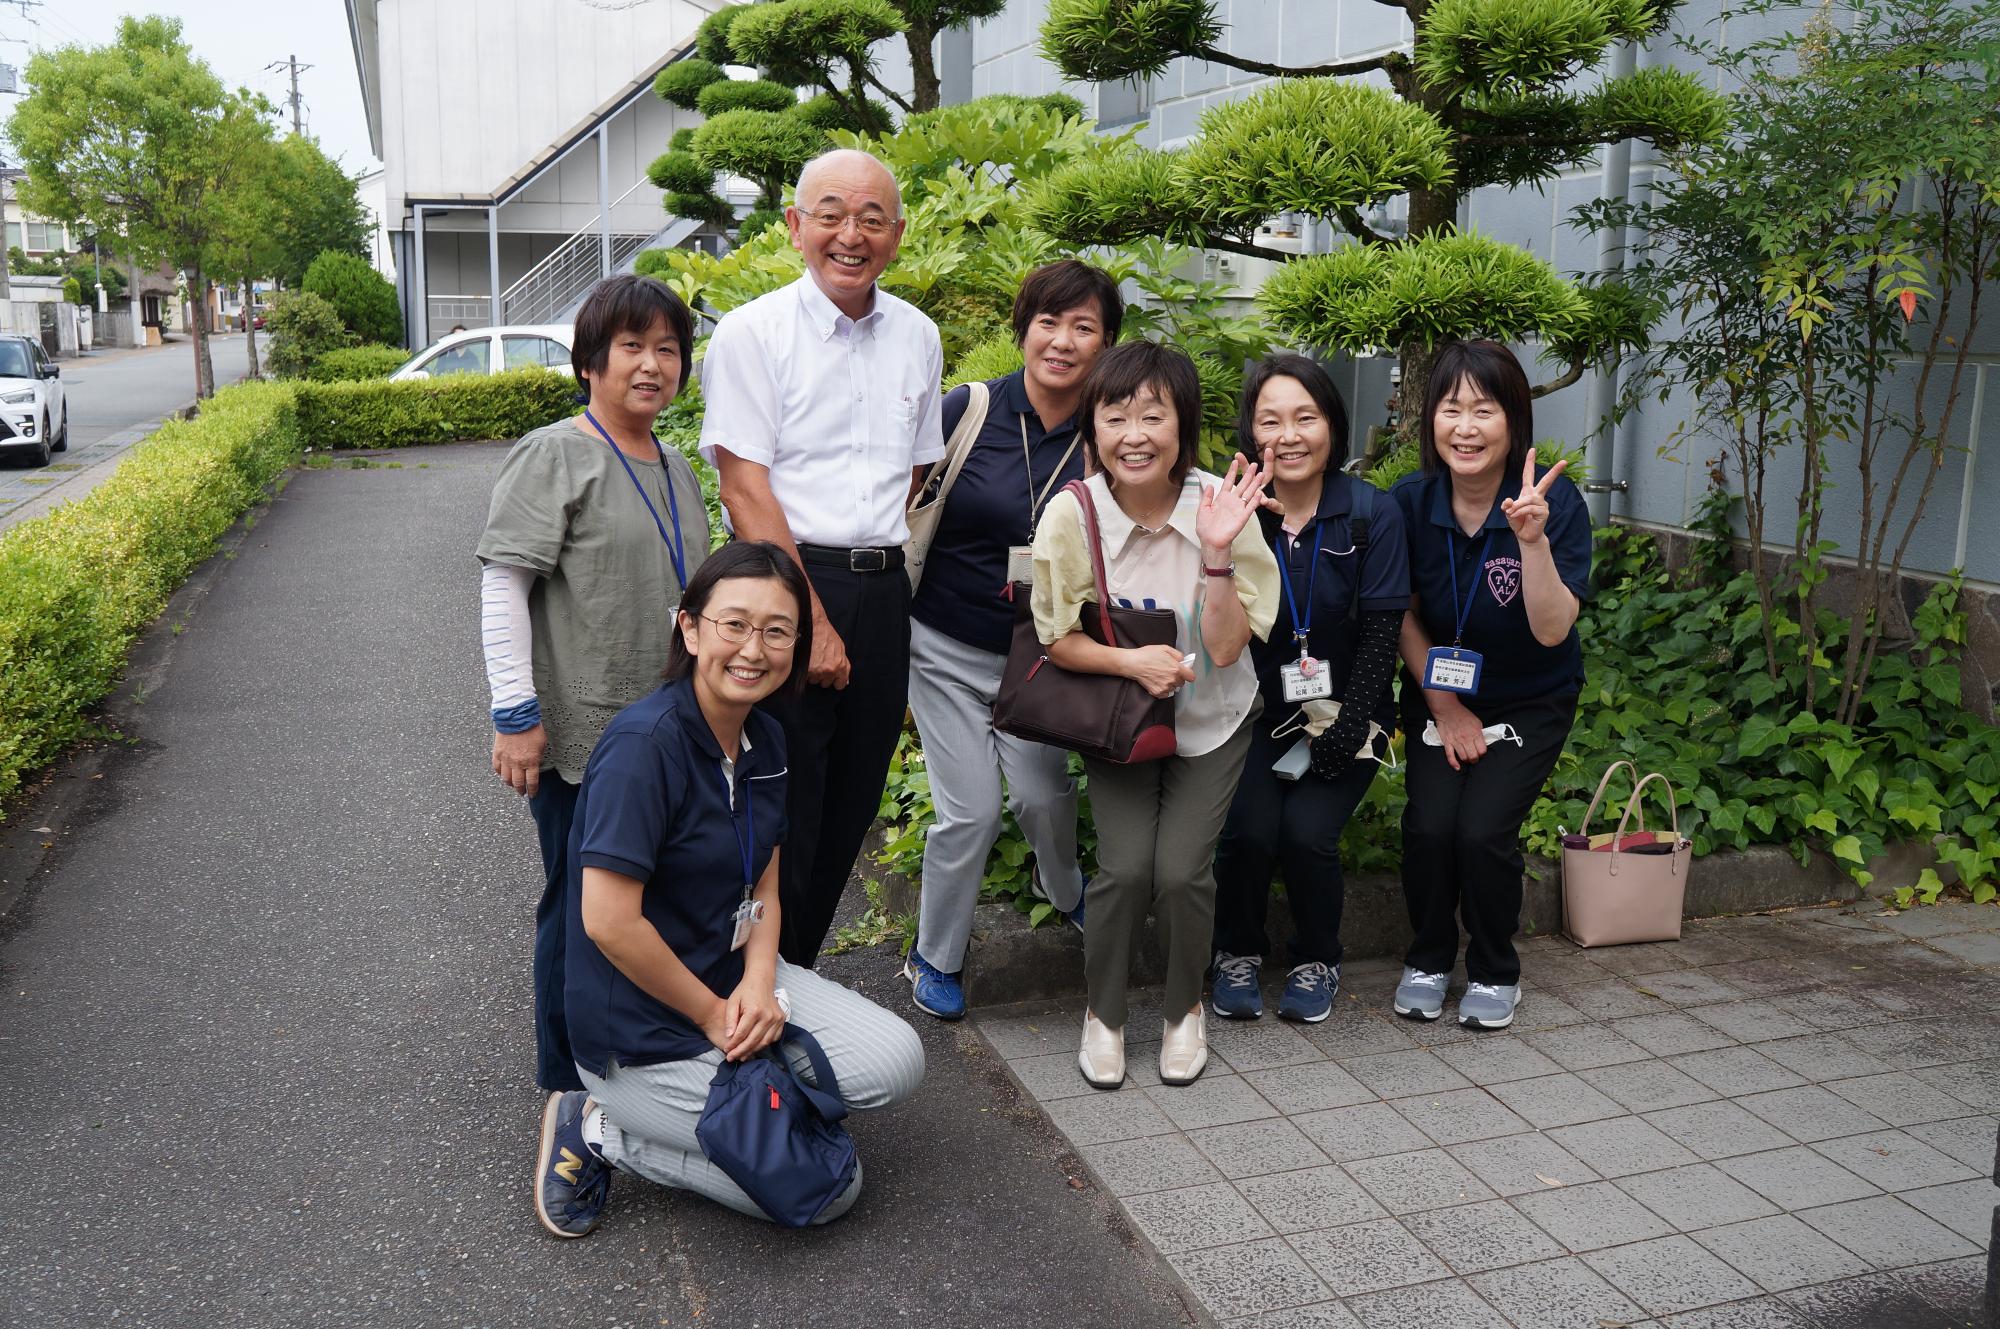 増田明美さん、市長、社協の皆さんの記念撮影